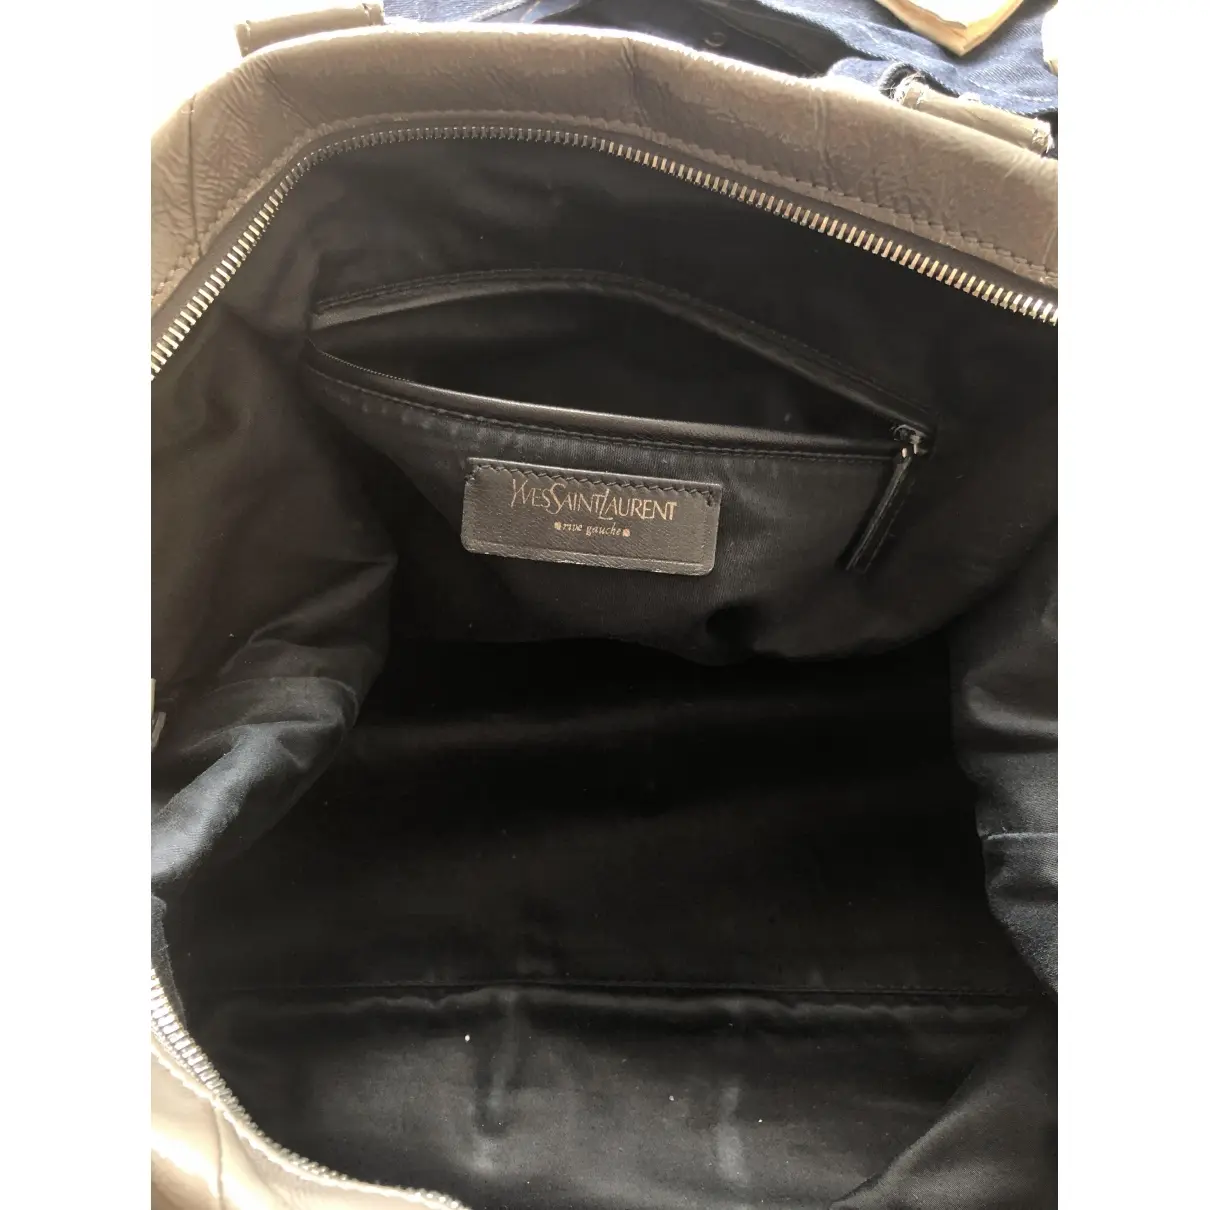 Buy Yves Saint Laurent Easy leather handbag online